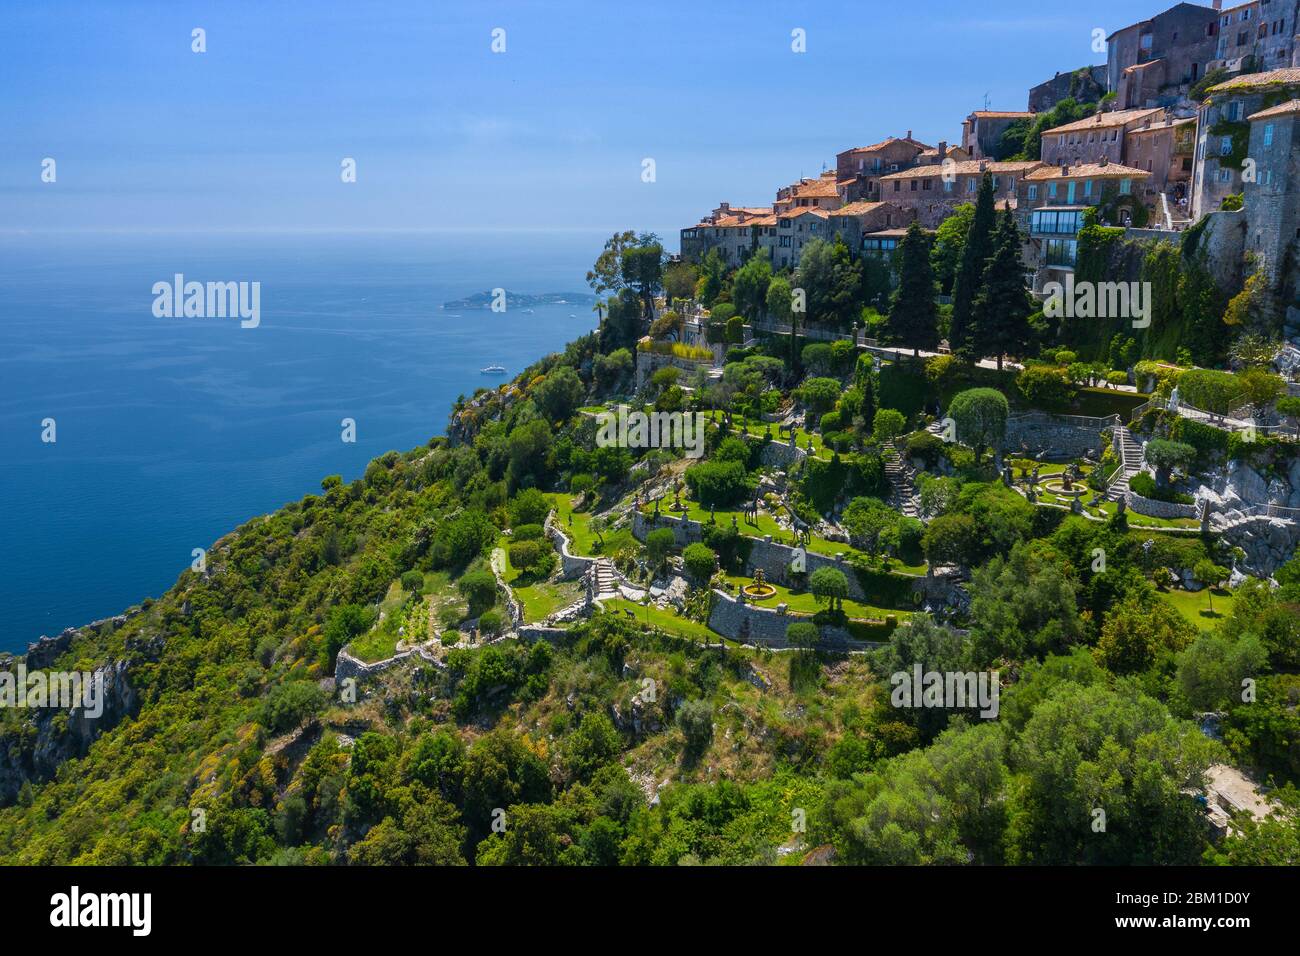 Vue aérienne du village médiéval d'Eze, sur le littoral méditerranéen, paysage et montagnes, Côte d'Azur. France. Banque D'Images